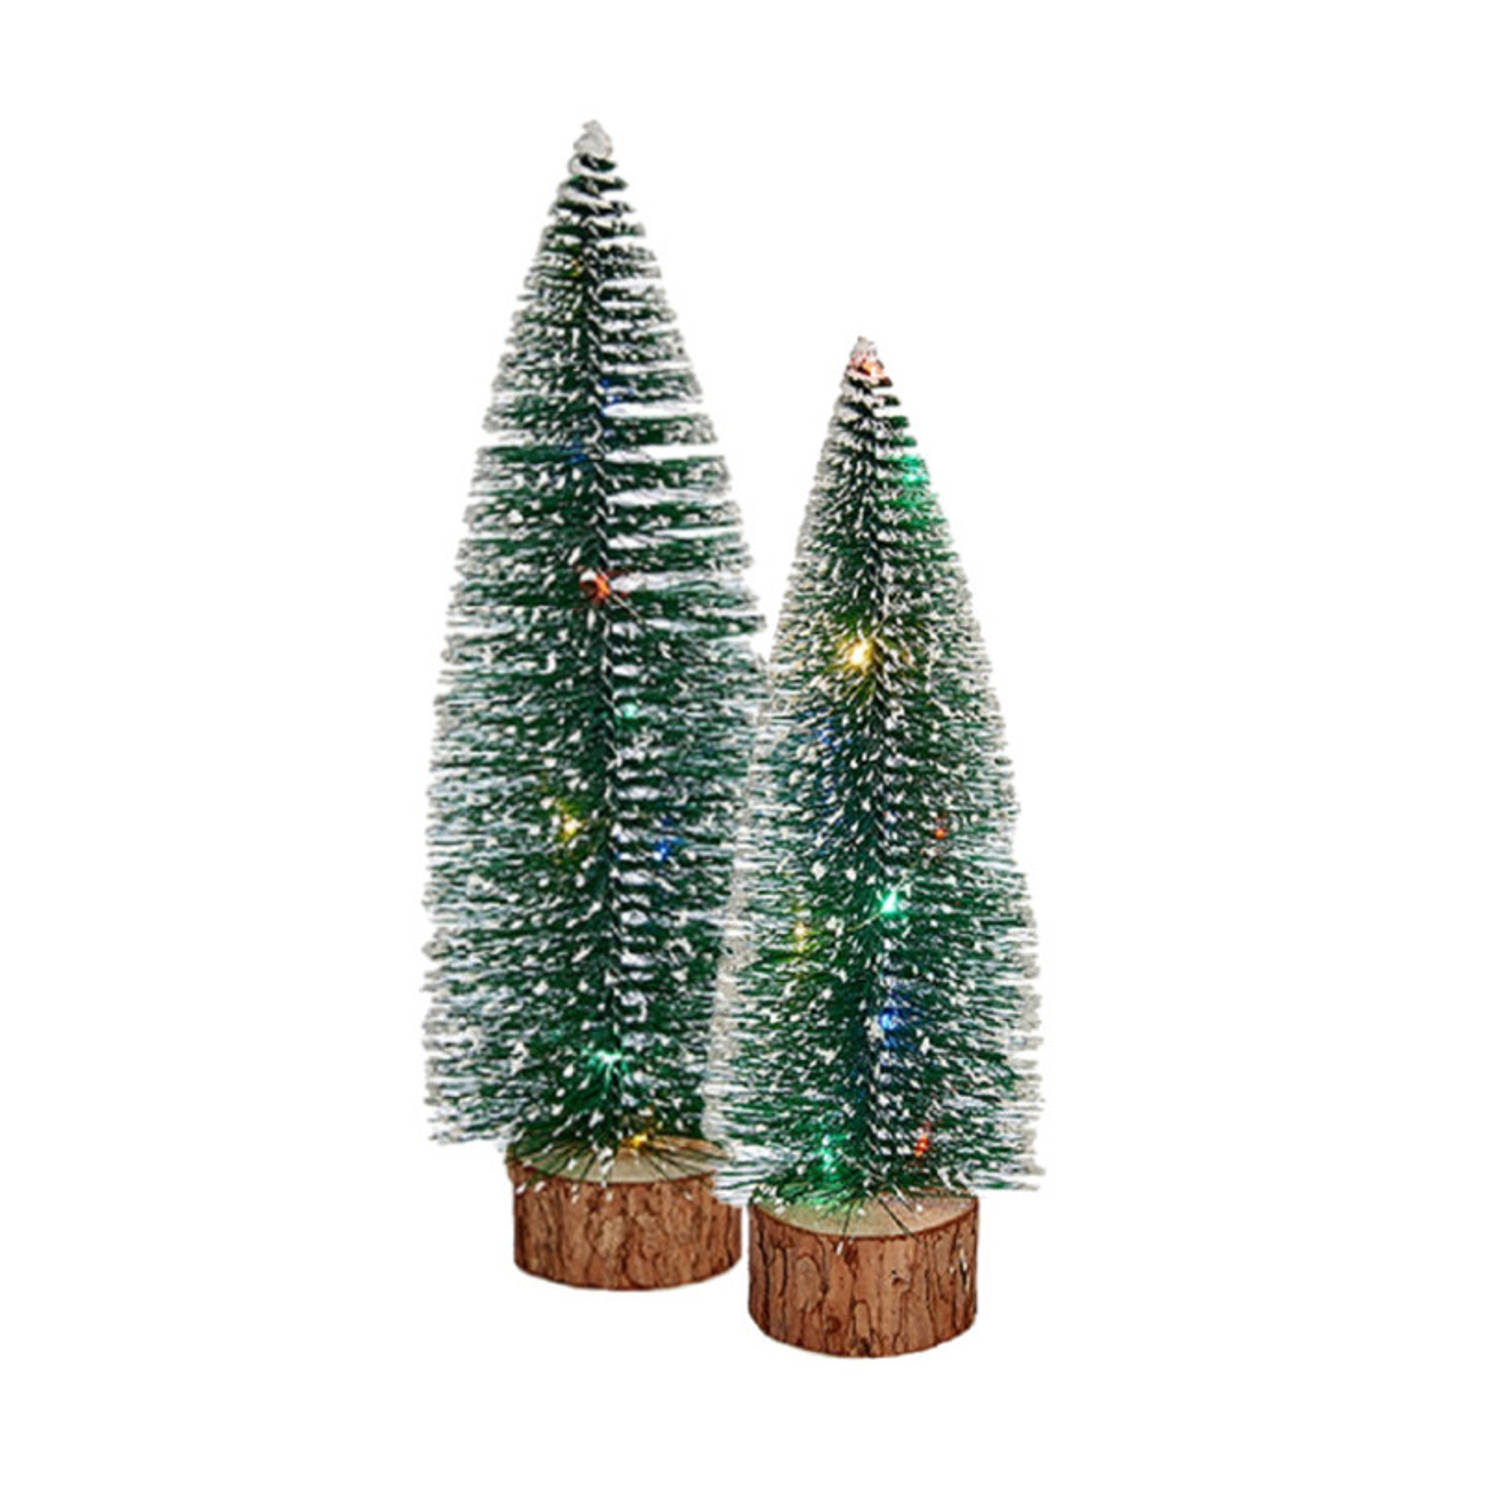 Kleine-mini decoratie kerstboompjes set van 2x st met gekleurd licht 25-30 cm Kerstdorpen